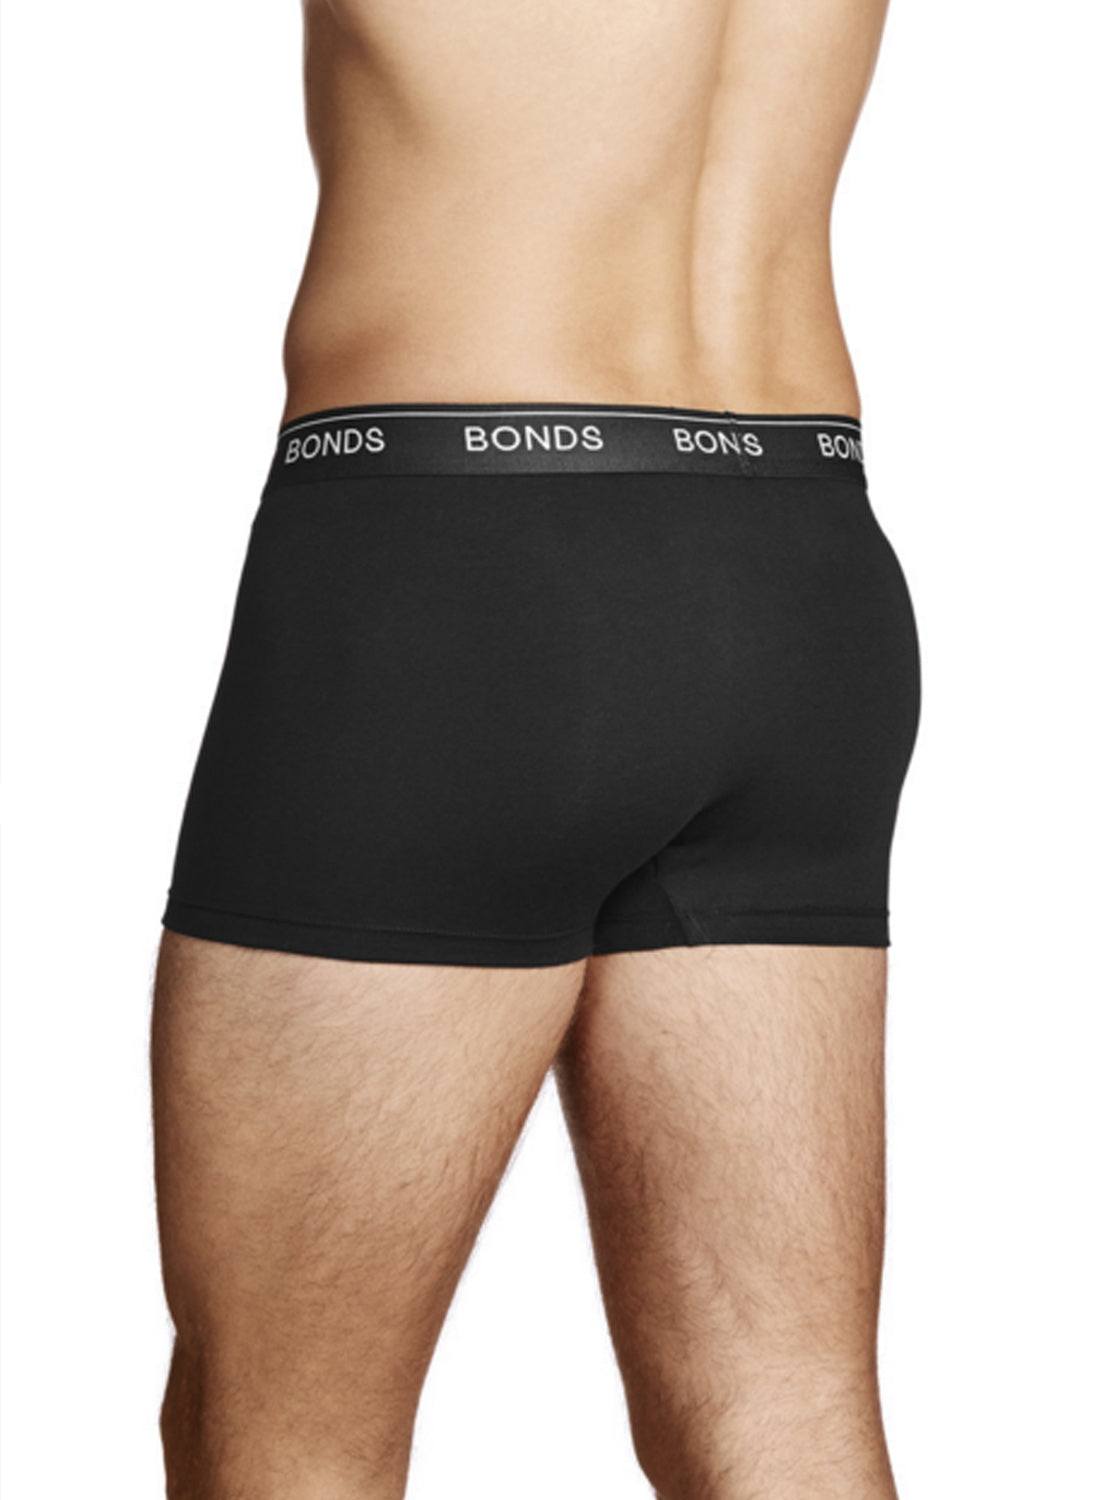 Bonds Guyfront Trunks Mens Underwear by Bonds | The Bloke Shop